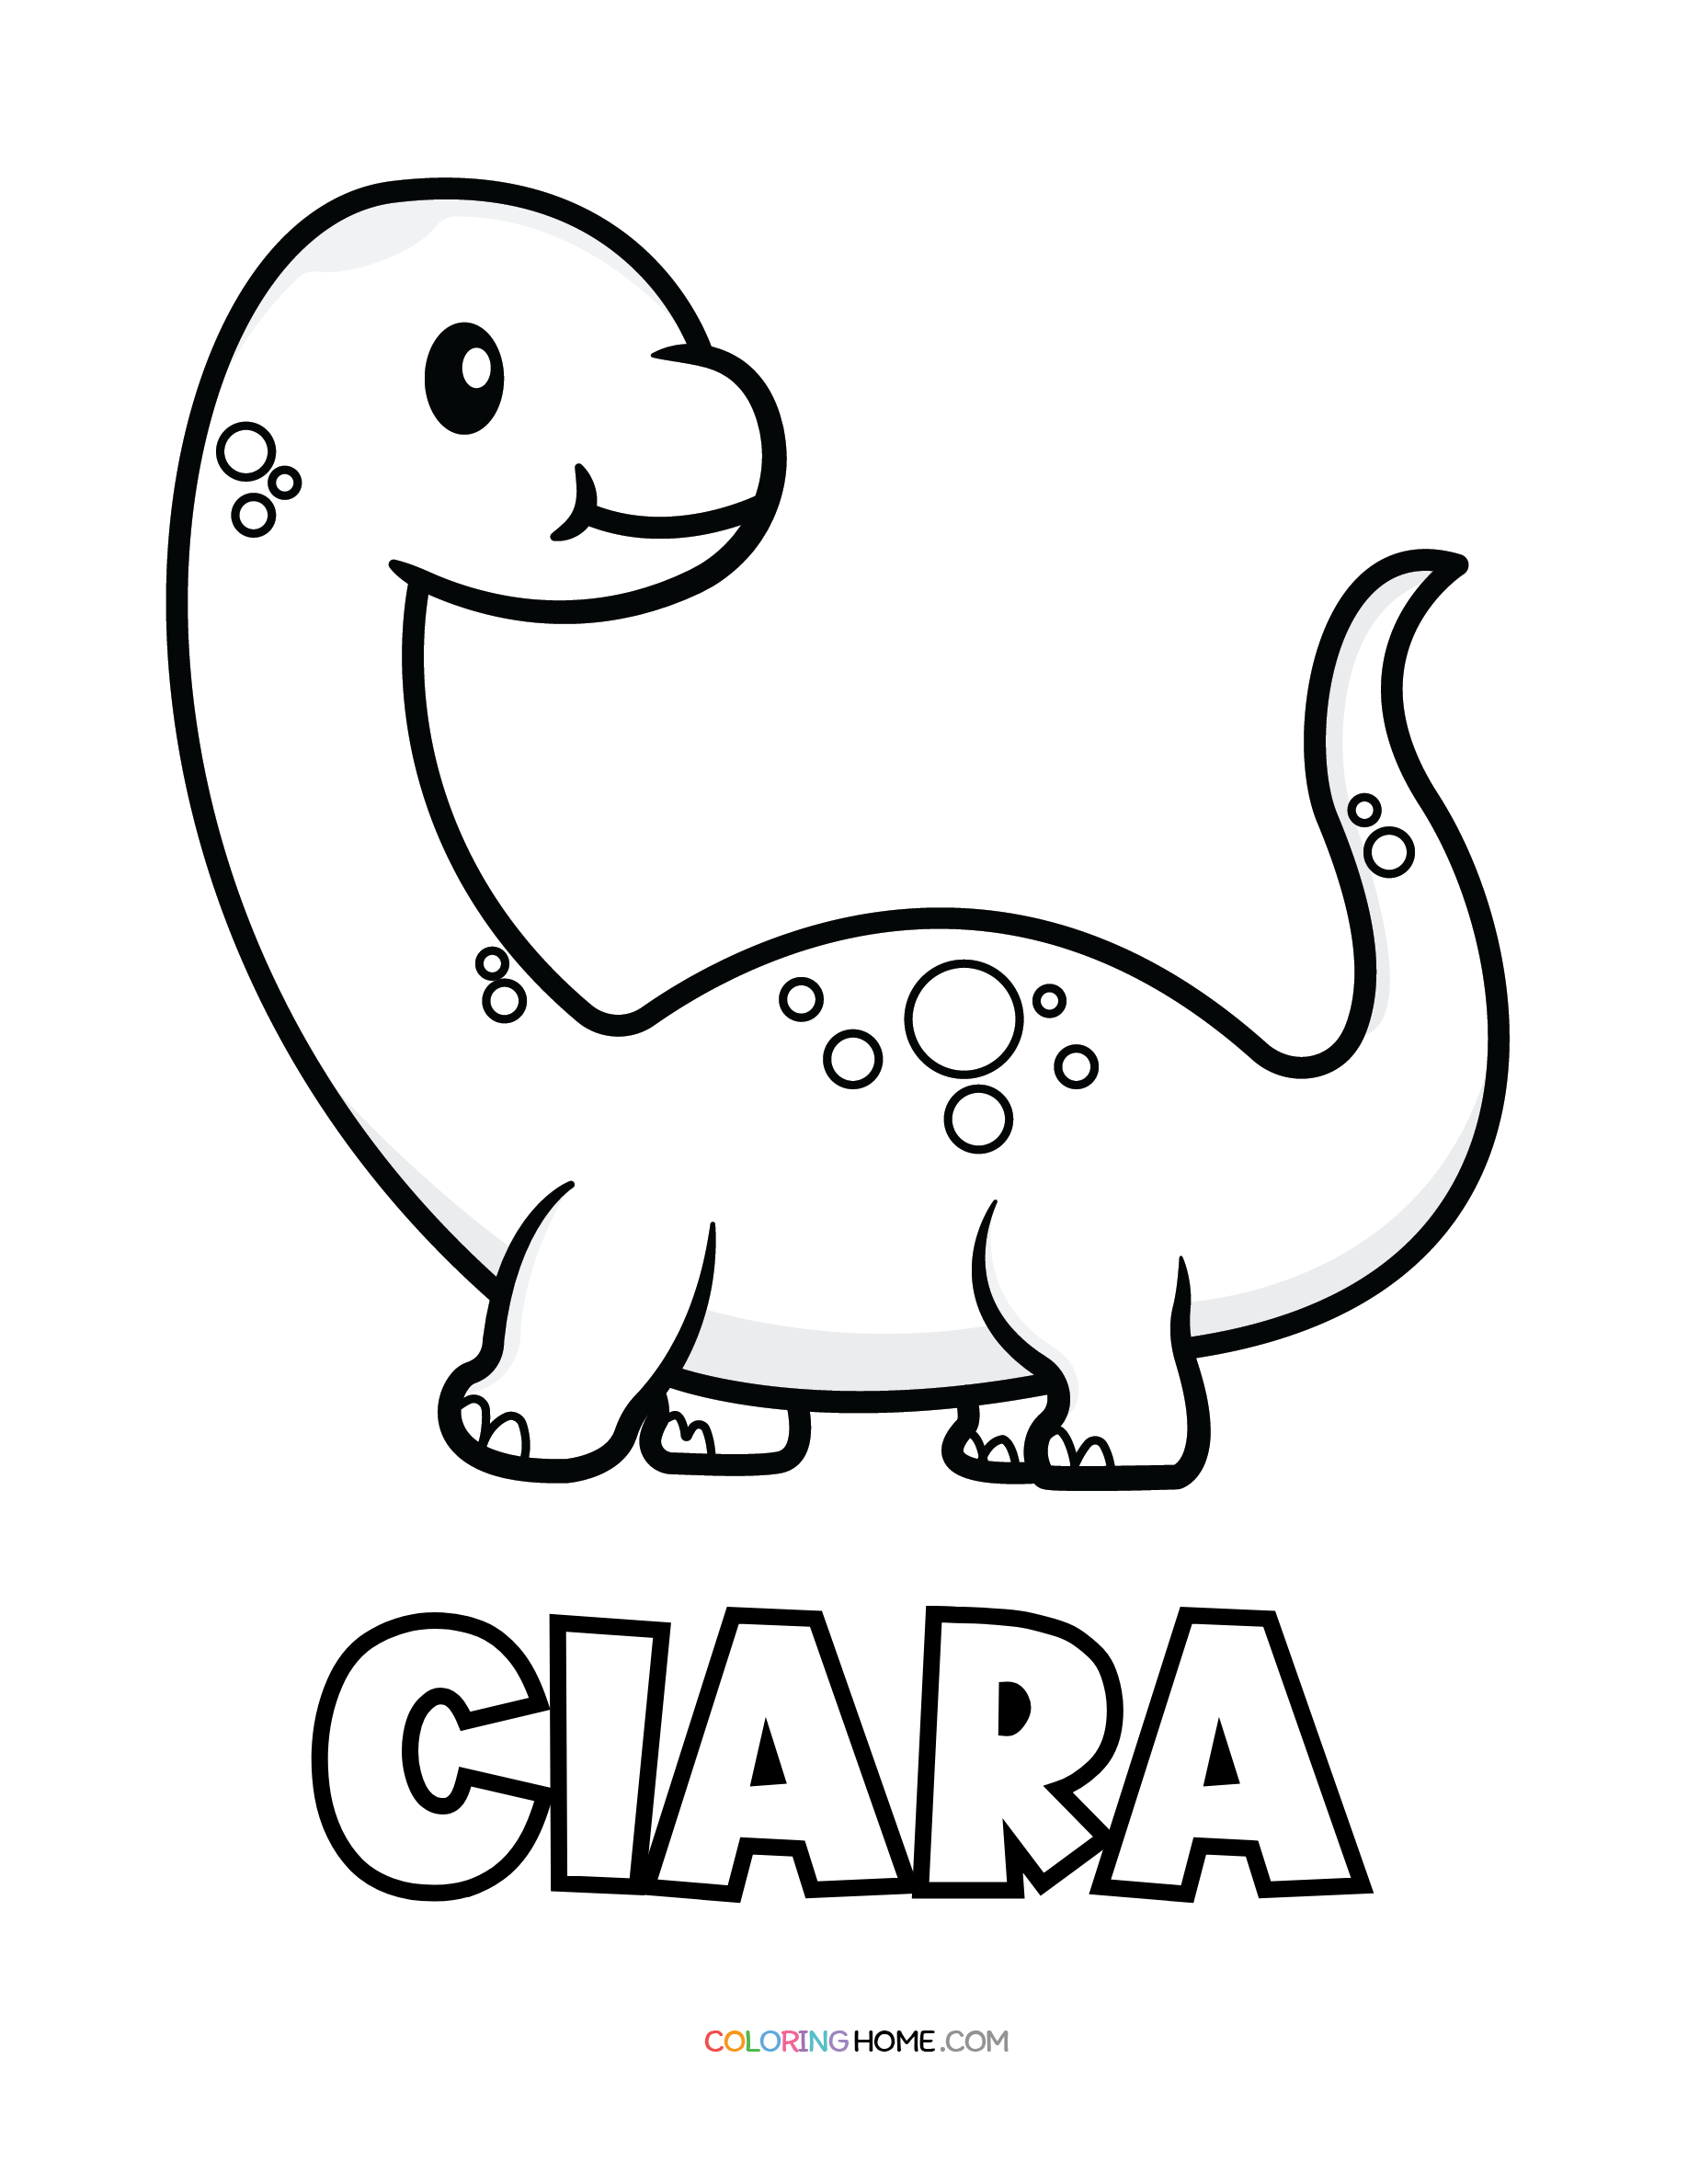 Ciara dinosaur coloring page